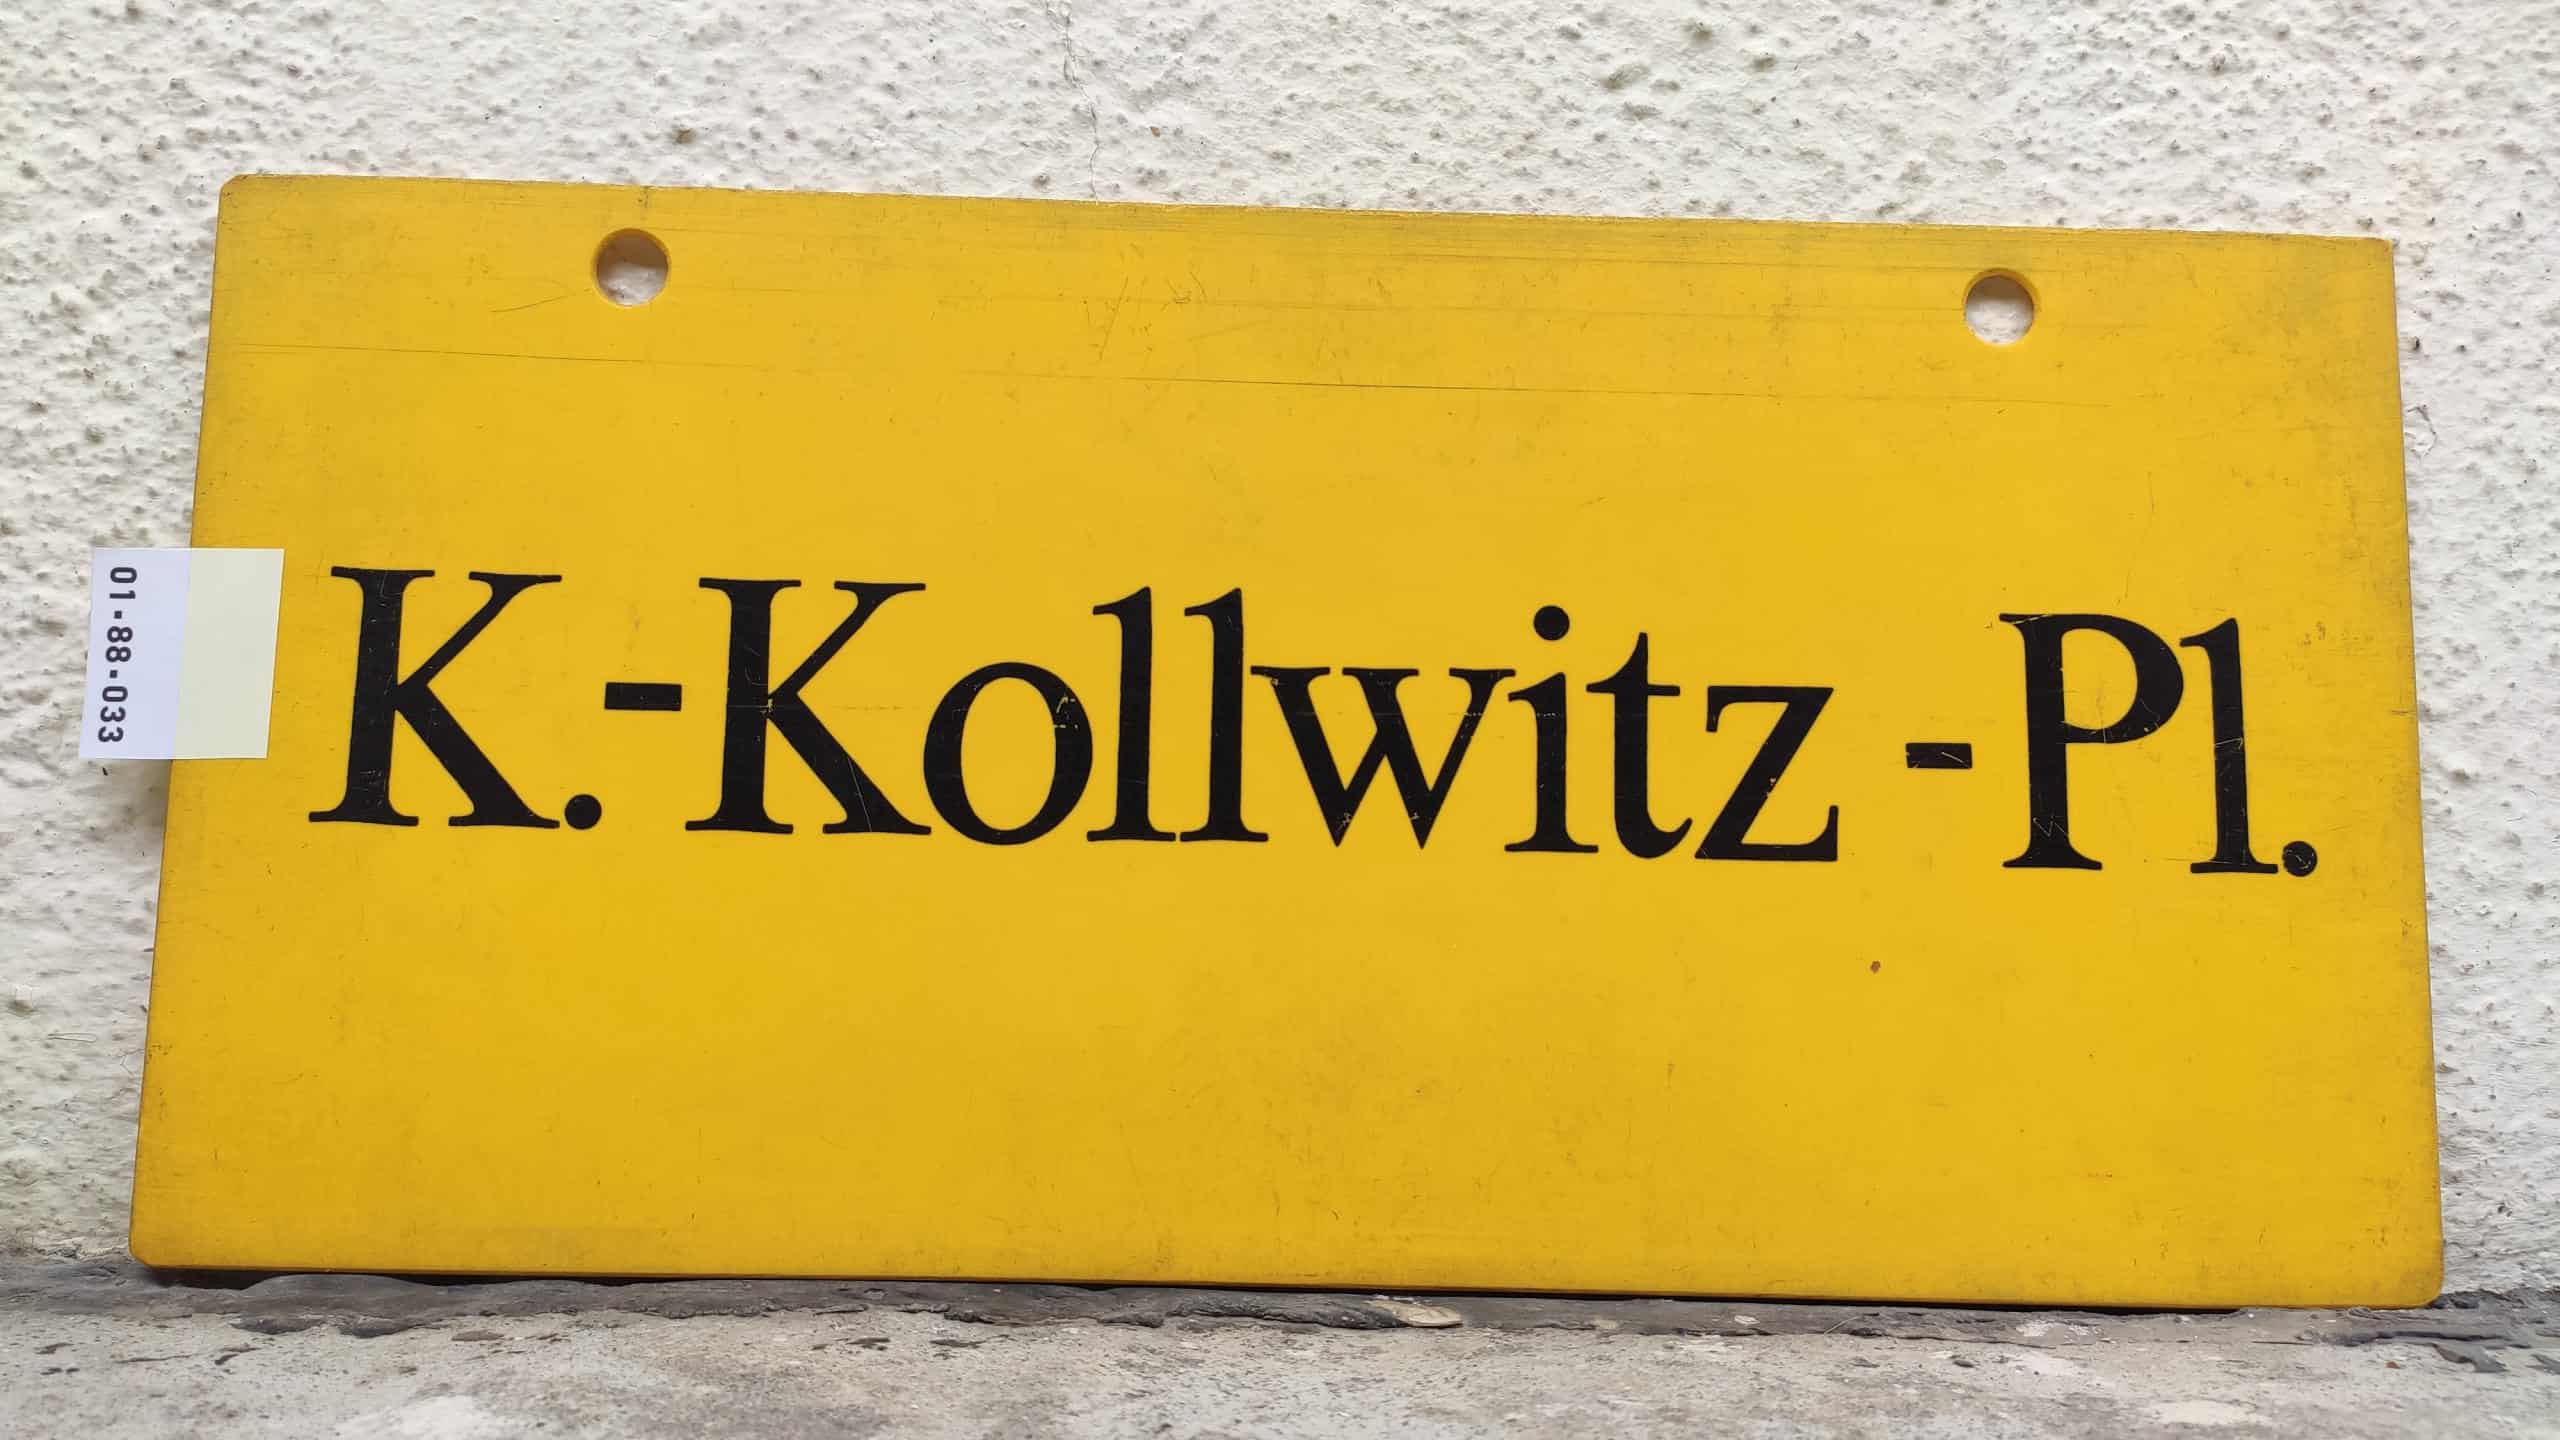 K.-Kollwitz- Pl.